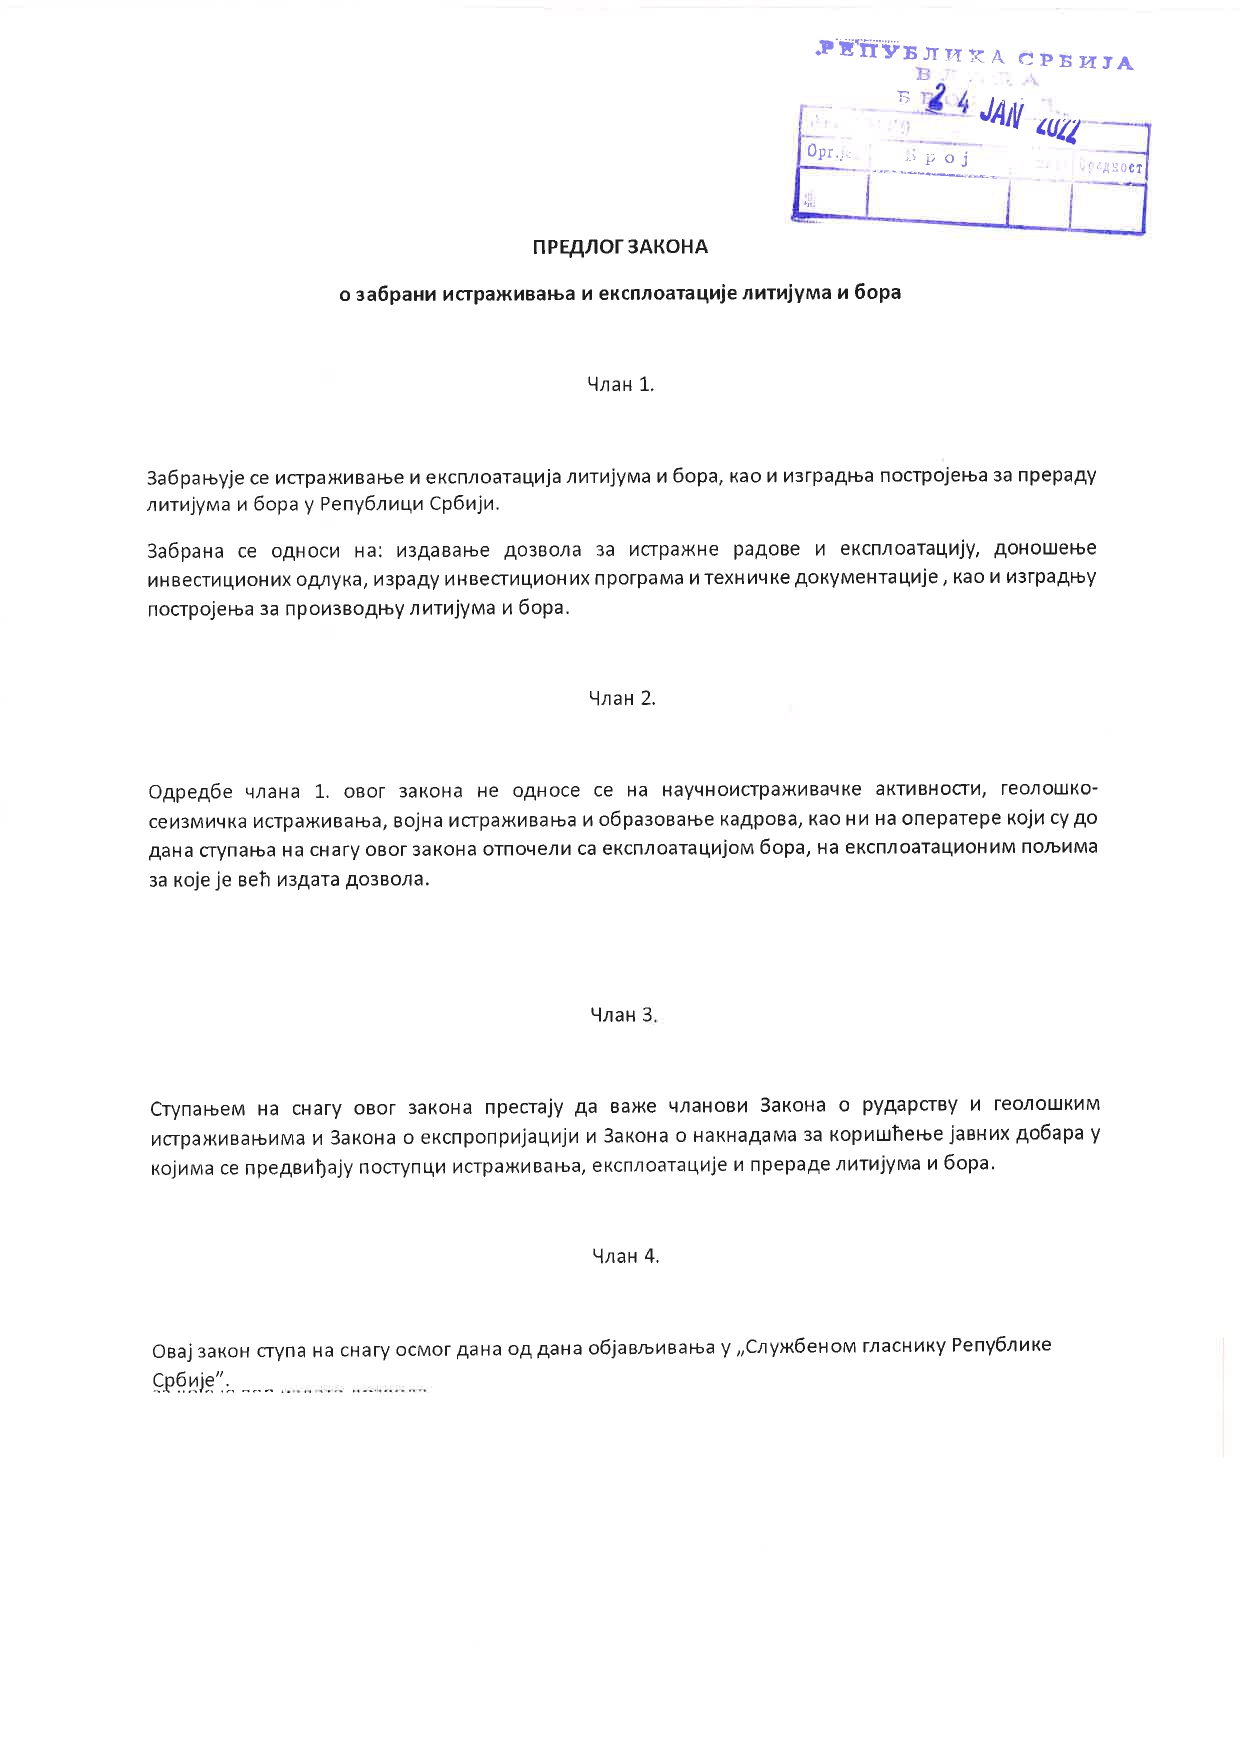 Predlog zakona protiv litijuma i bora pages to jpg 0001